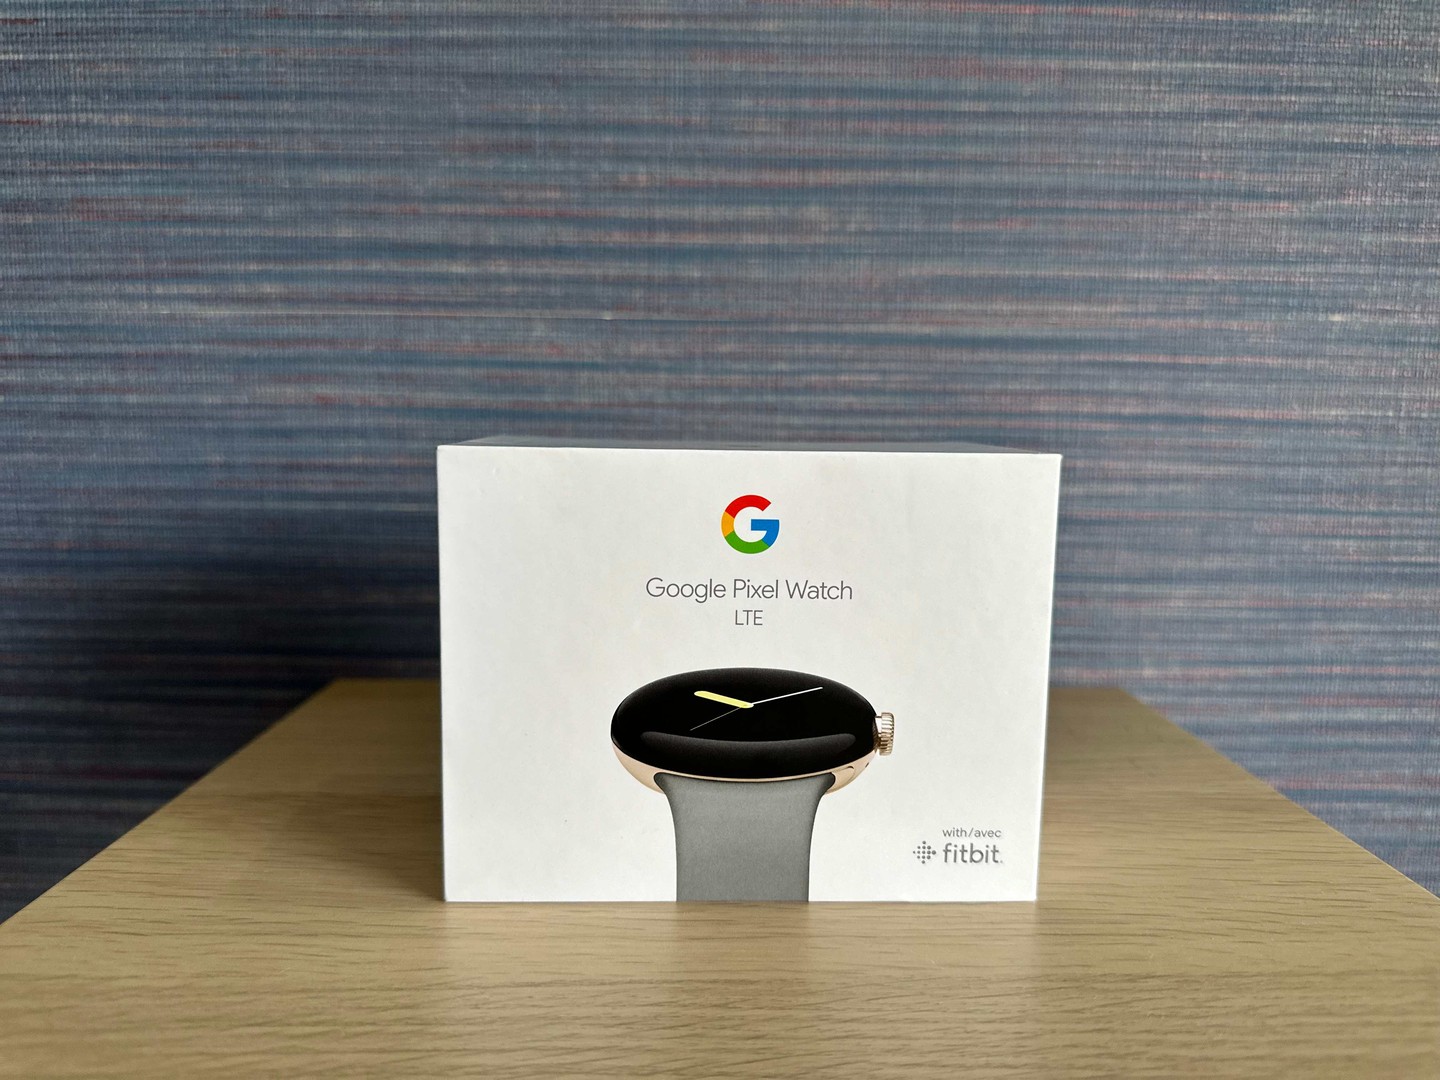 accesorios para electronica - Vendo Google Pixel Watch LTE Nuevo Sellado/ TIENDA!!! 0